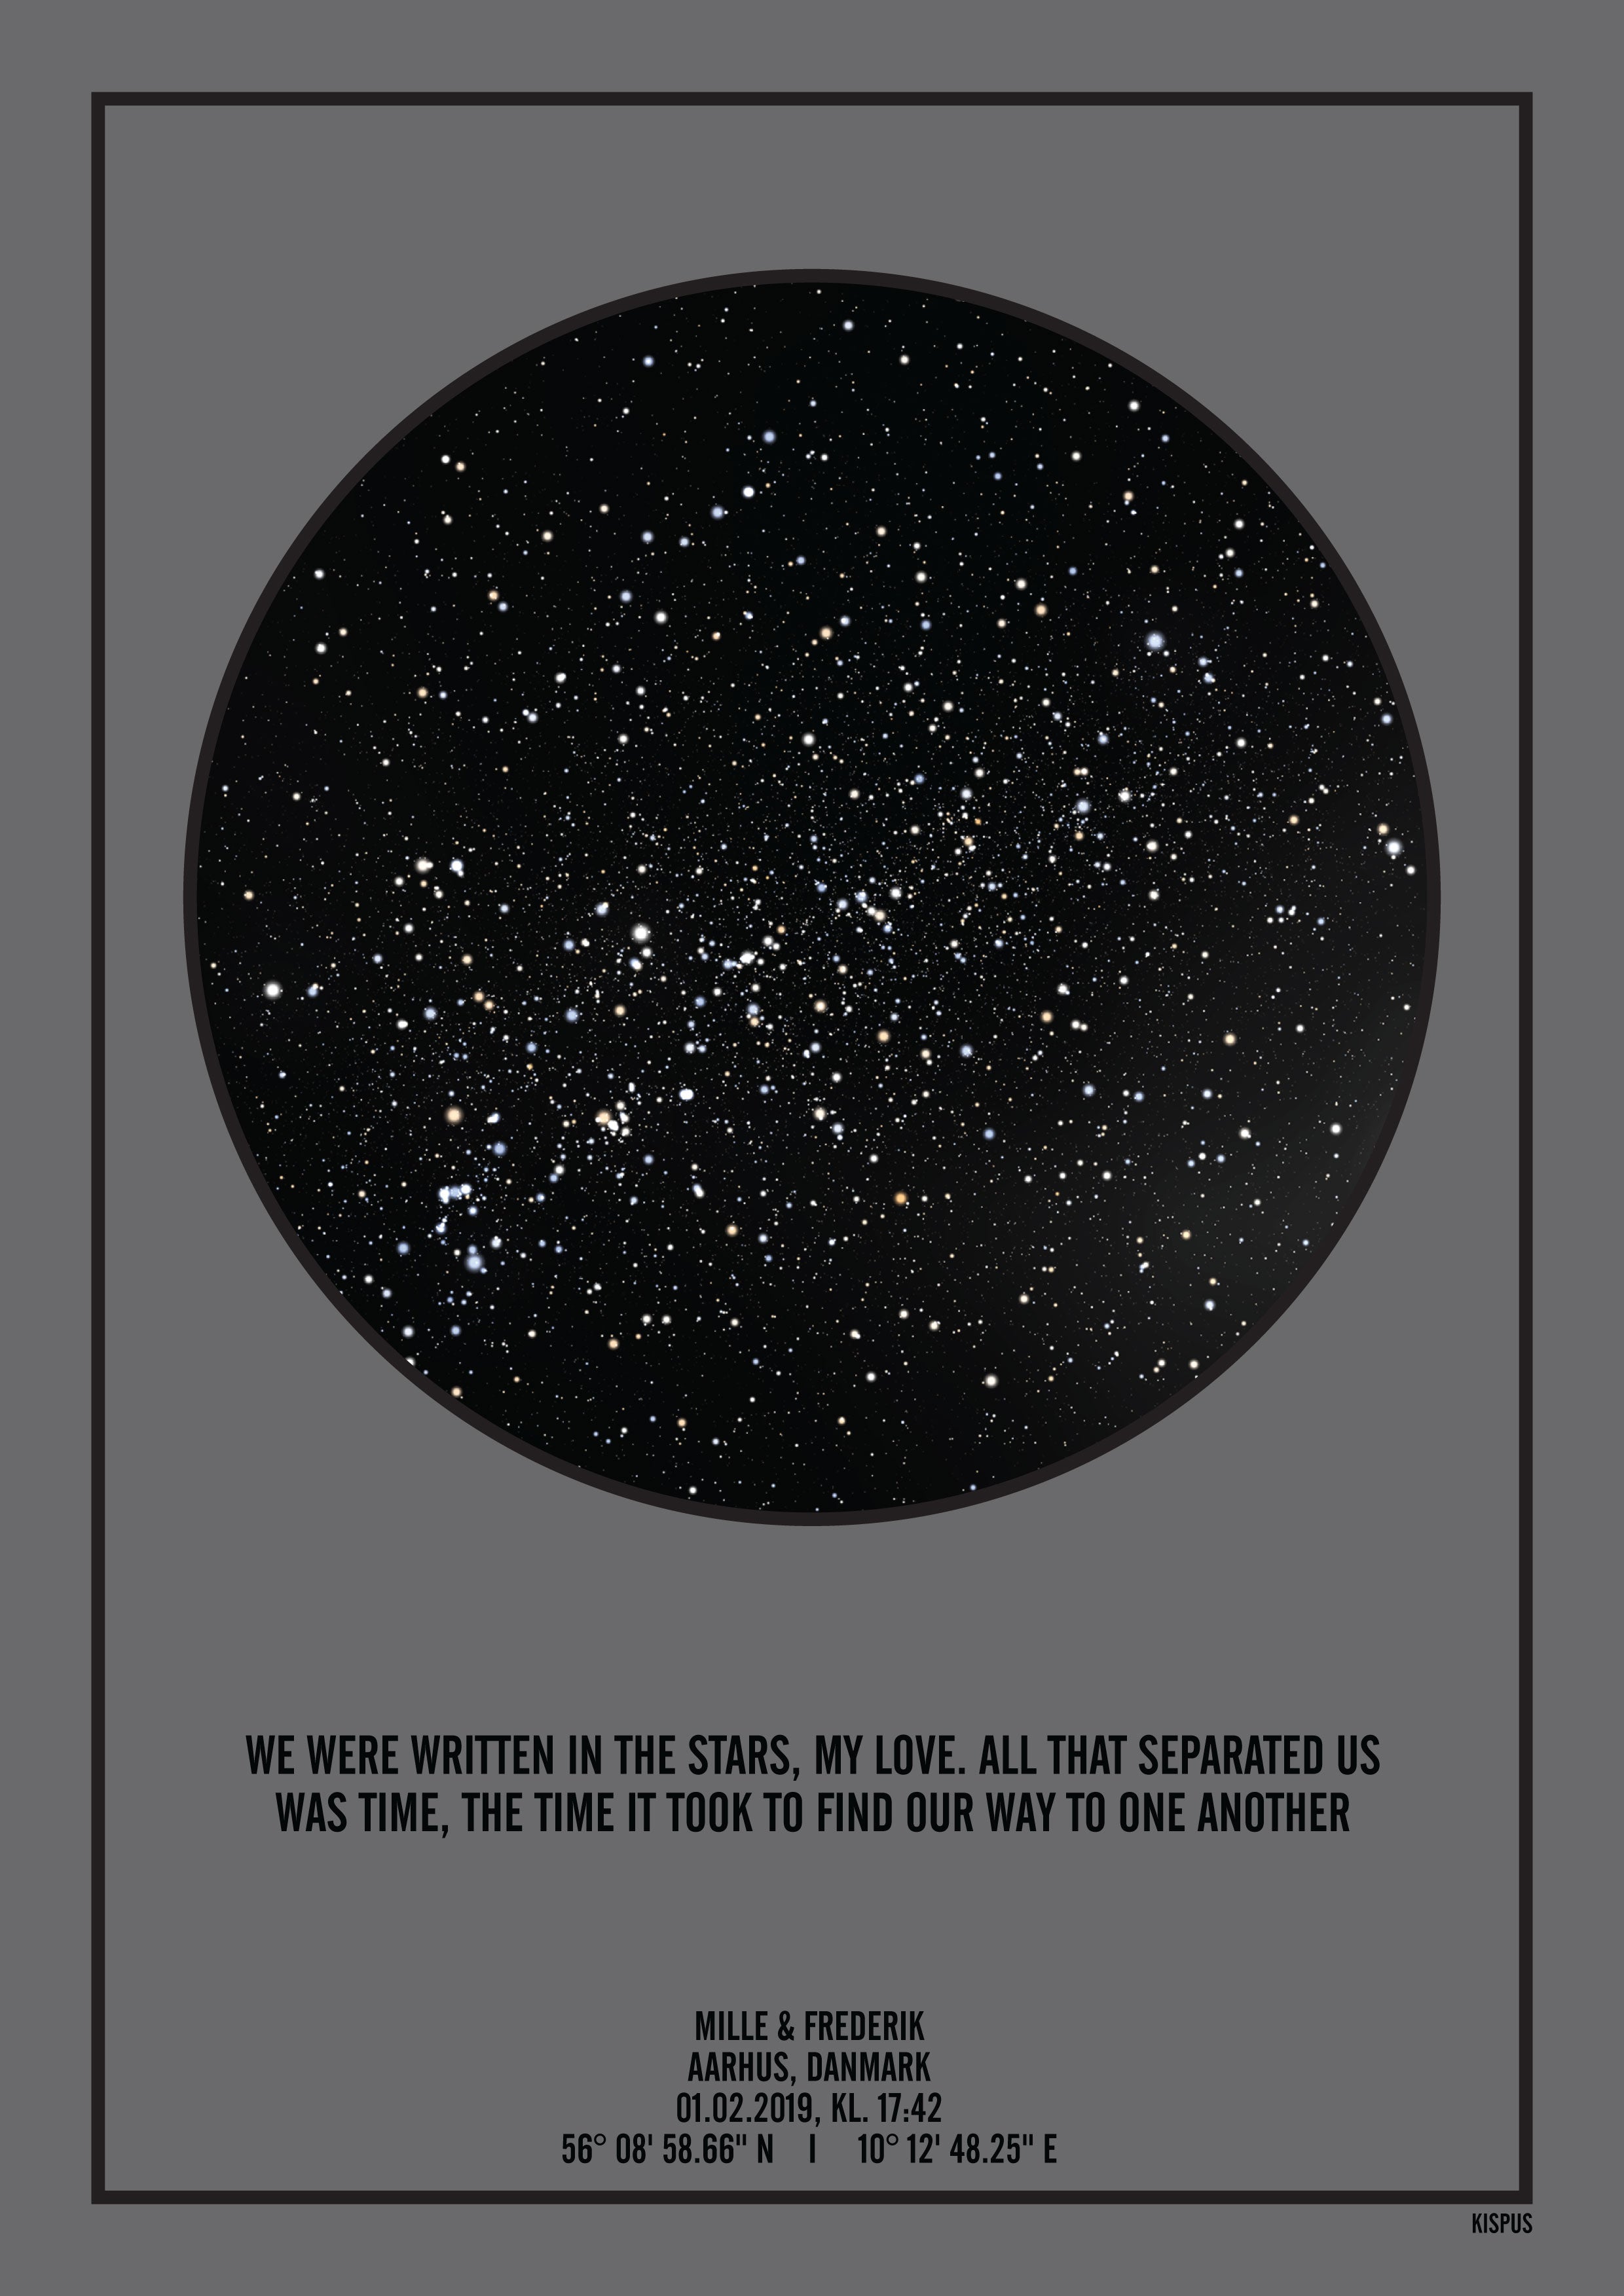 Se PERSONLIG STJERNEHIMMEL PLAKAT (MØRKEGRÅ) - 50x70 / Sort tekst + sort stjernehimmel / Klar stjernehimmel hos KISPUS